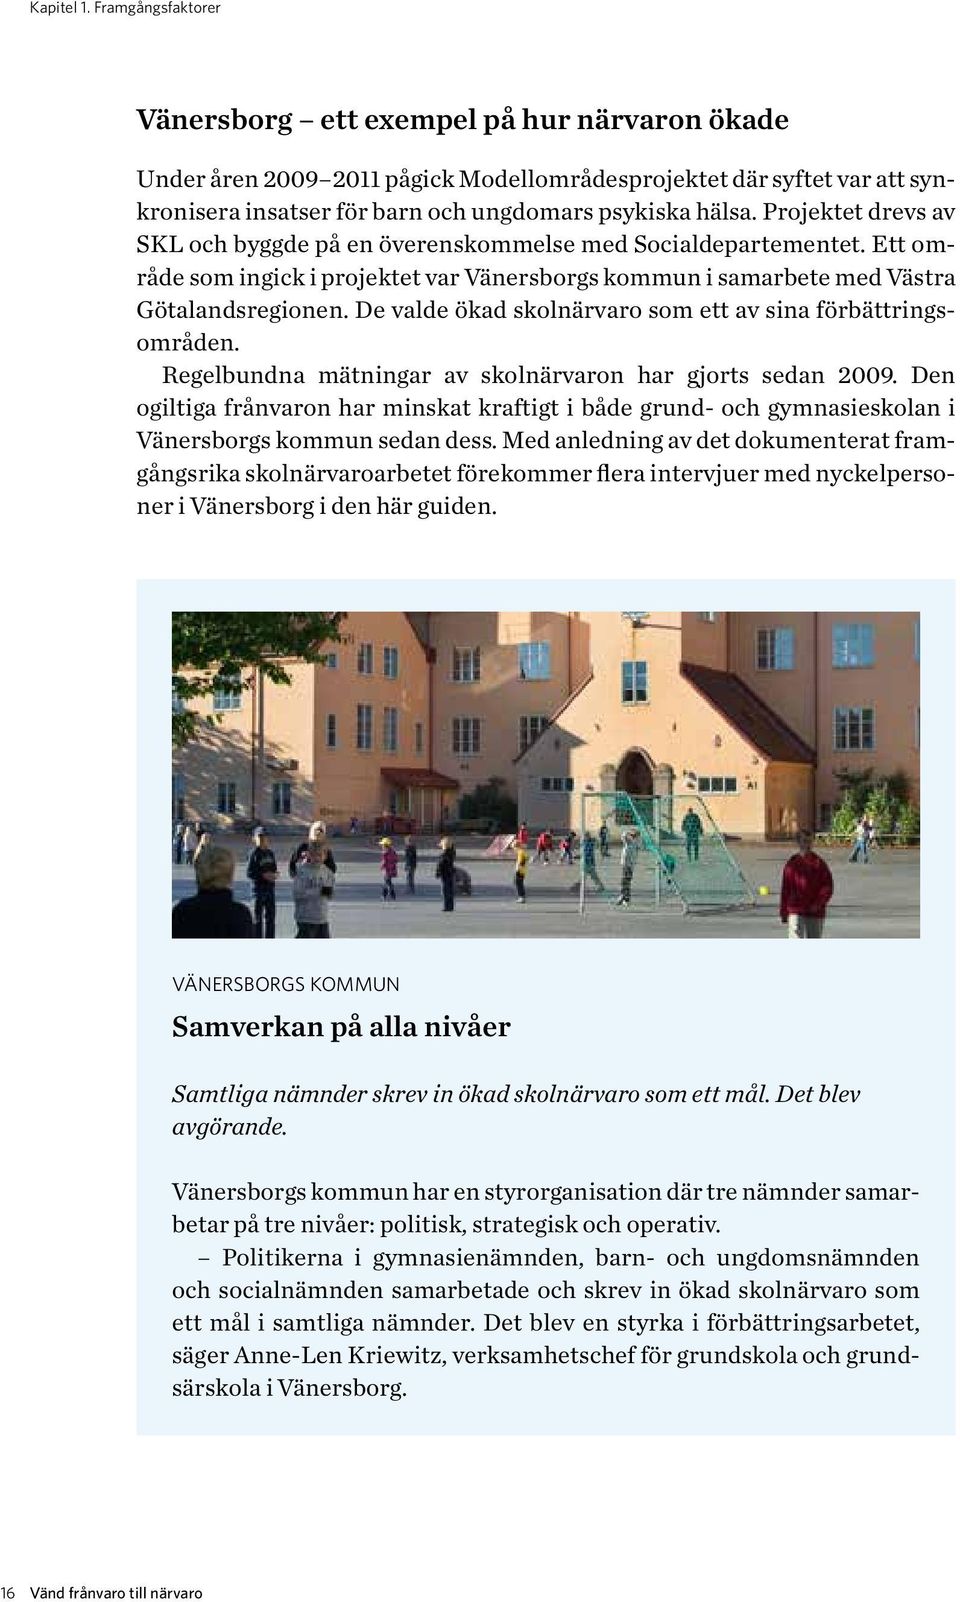 Projektet drevs av SKL och byggde på en överenskommelse med Socialdepartementet. Ett område som ingick i projektet var Vänersborgs kommun i samarbete med Västra Götalandsregionen.